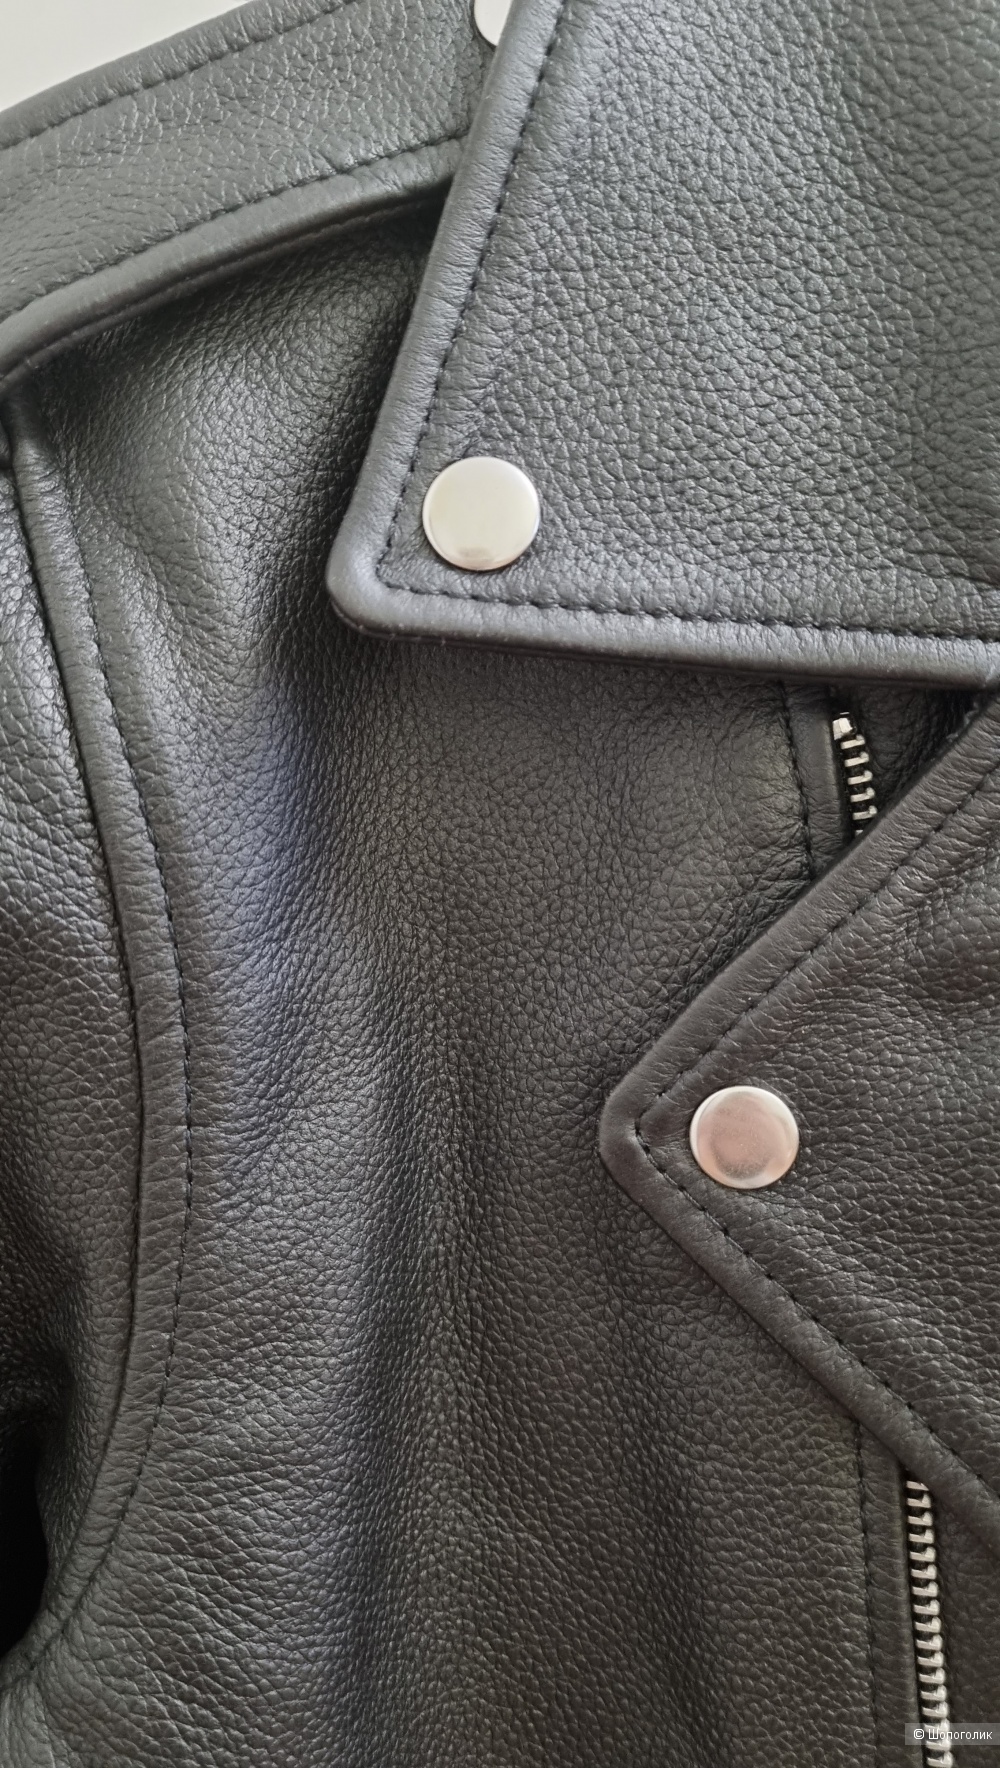 Кожаная куртка Asos бренда Reclaimed Vintage Размер (М) 48-50